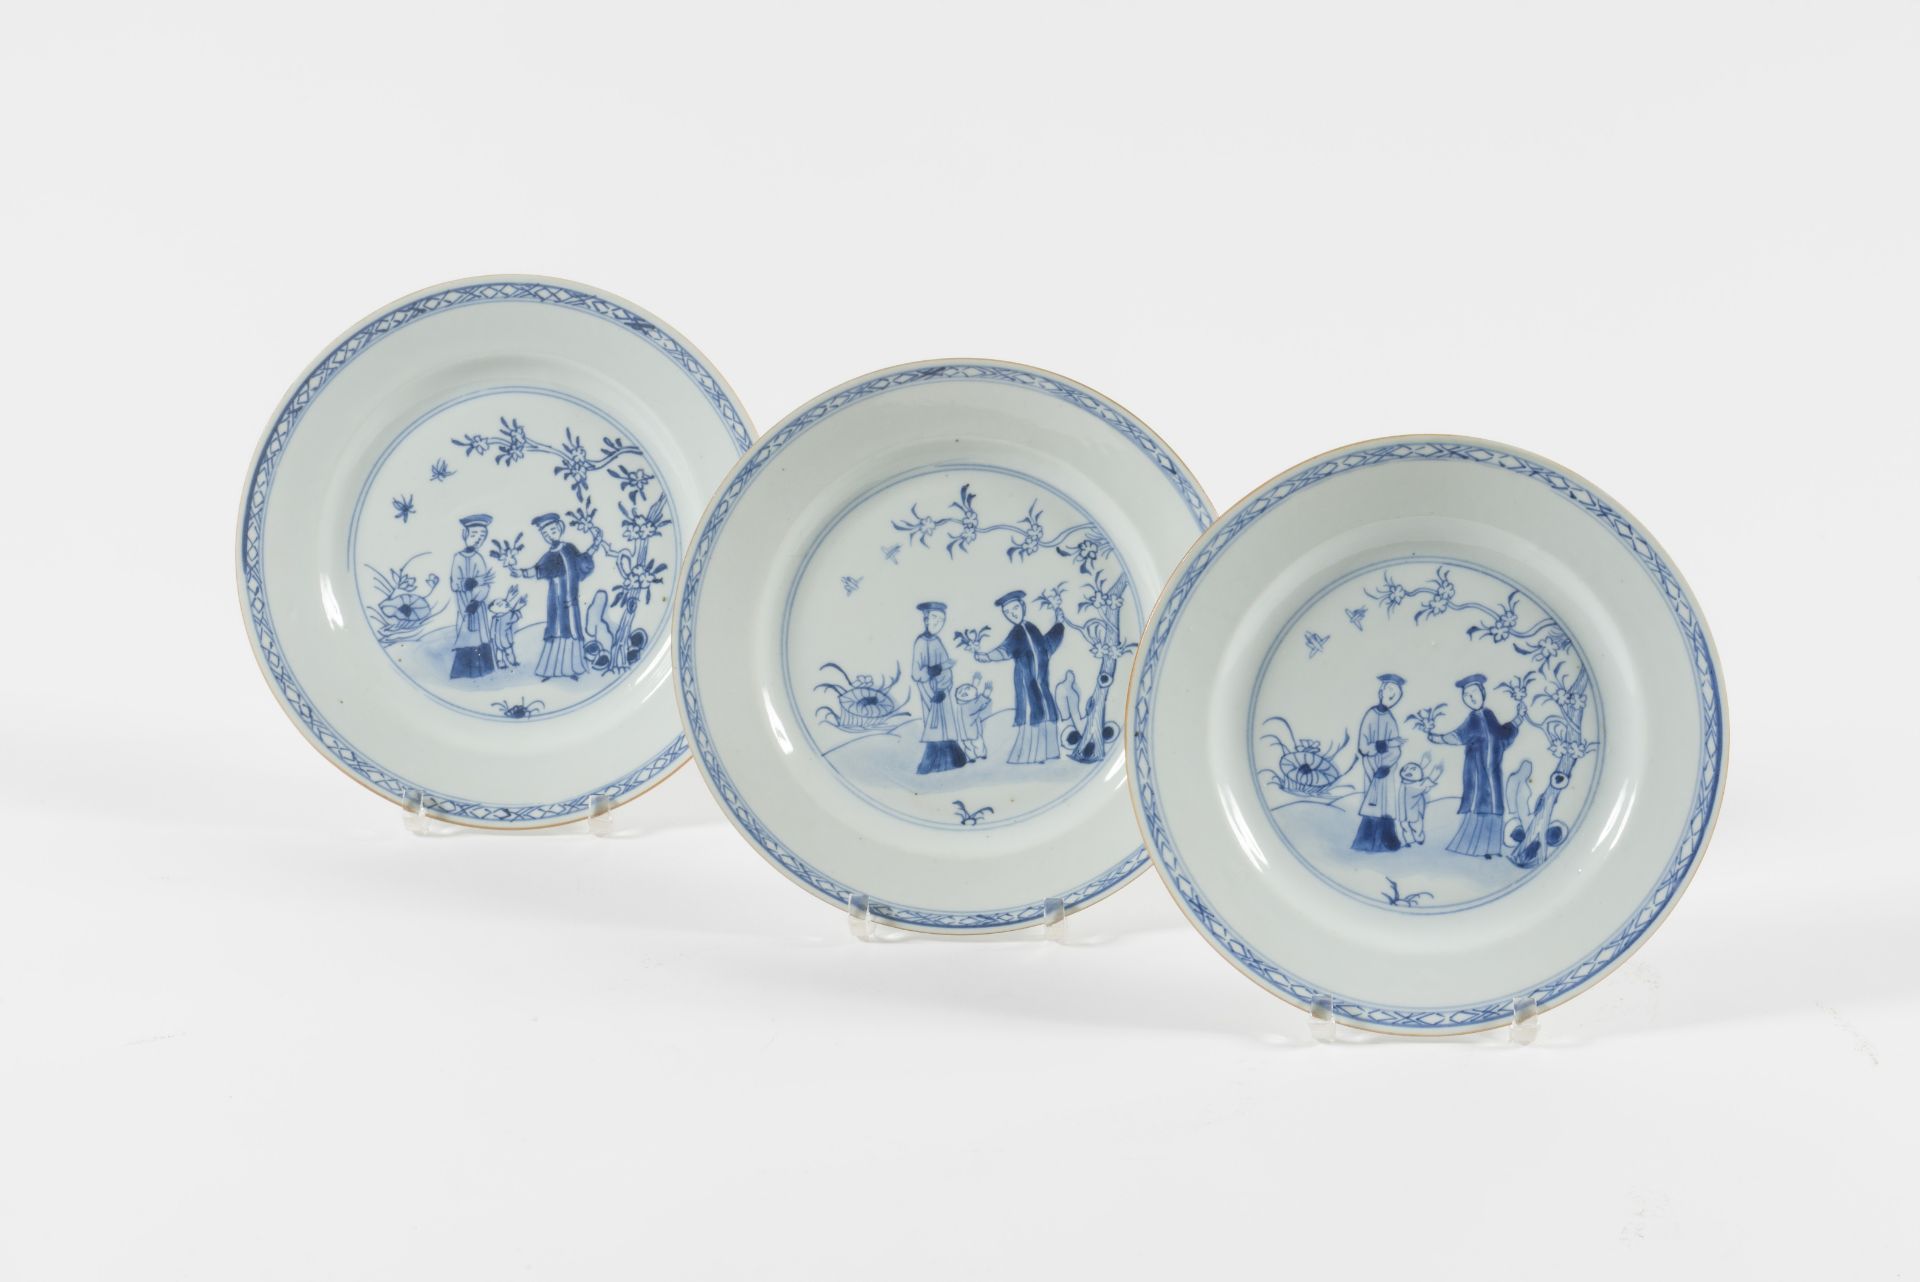 CHINE. Suite de trois assiettes en porcelaine bleue et blanche, vers 1740